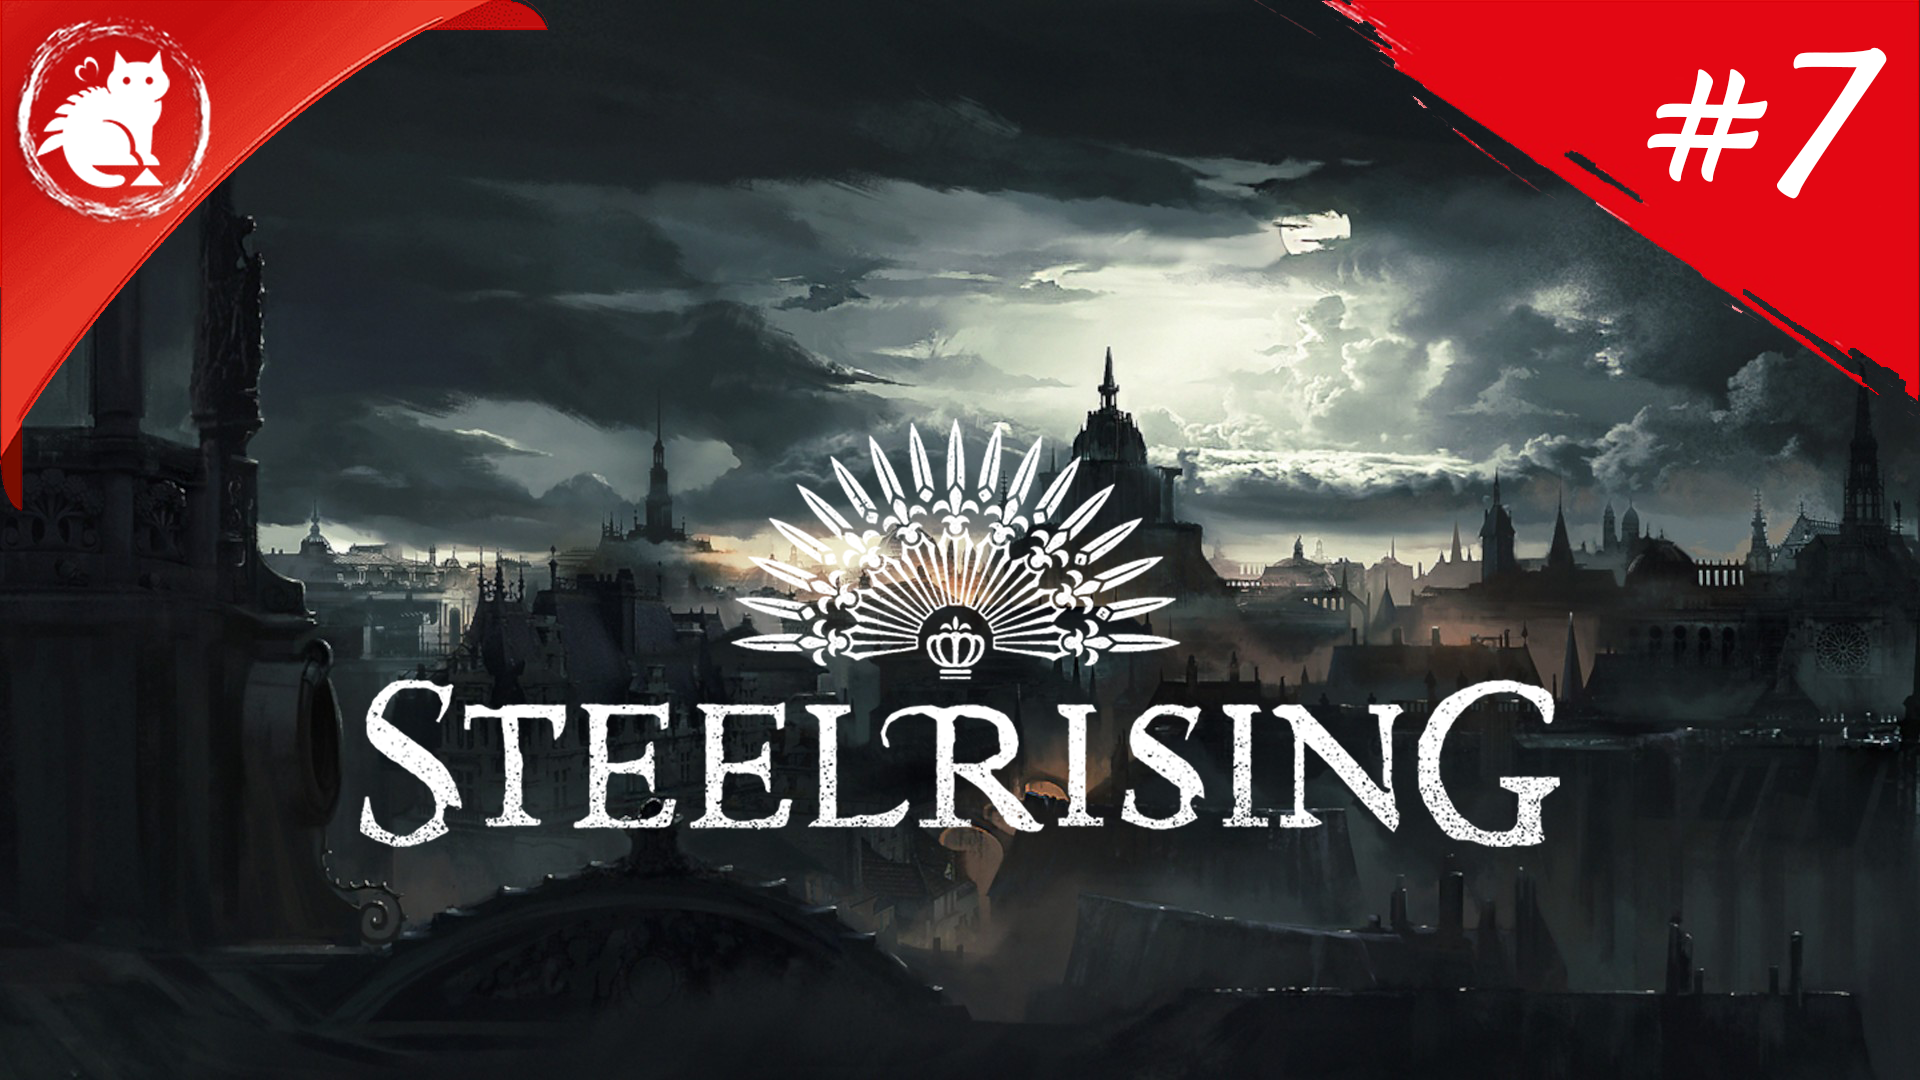 ★ Steelrising ★ - [#7]